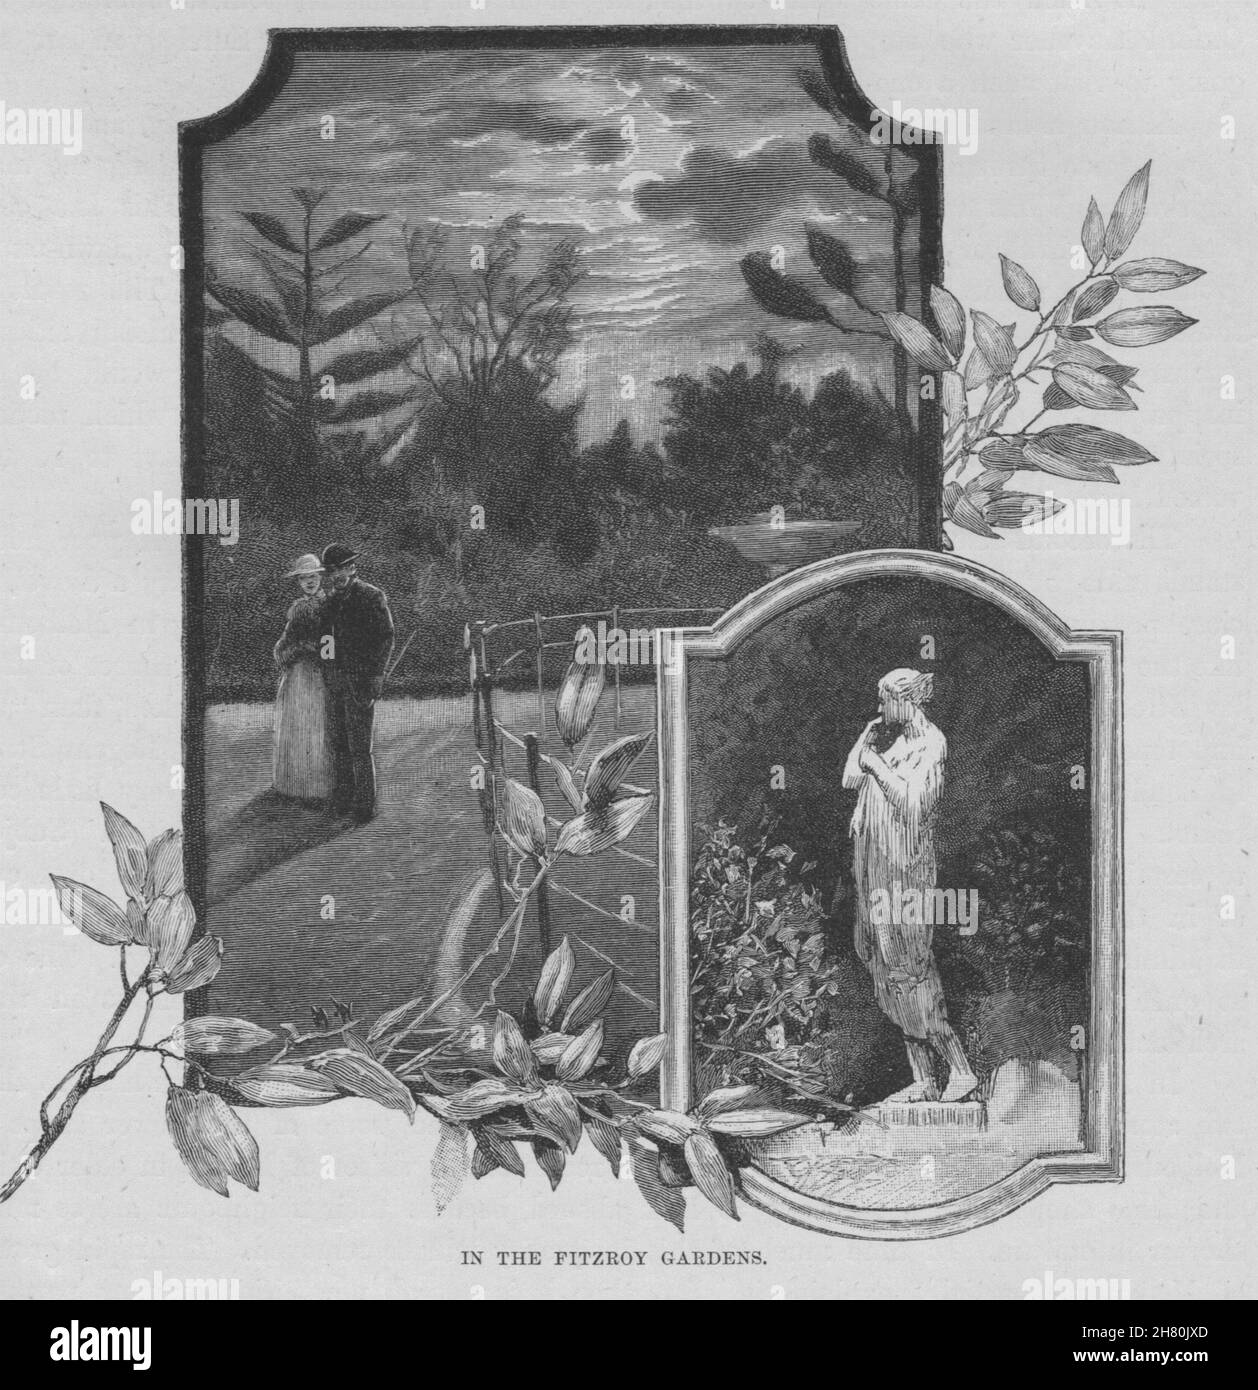 Dans les Jardins Fitzroy. Melbourne. L'Australie 1890 ancienne imprimer photo Banque D'Images